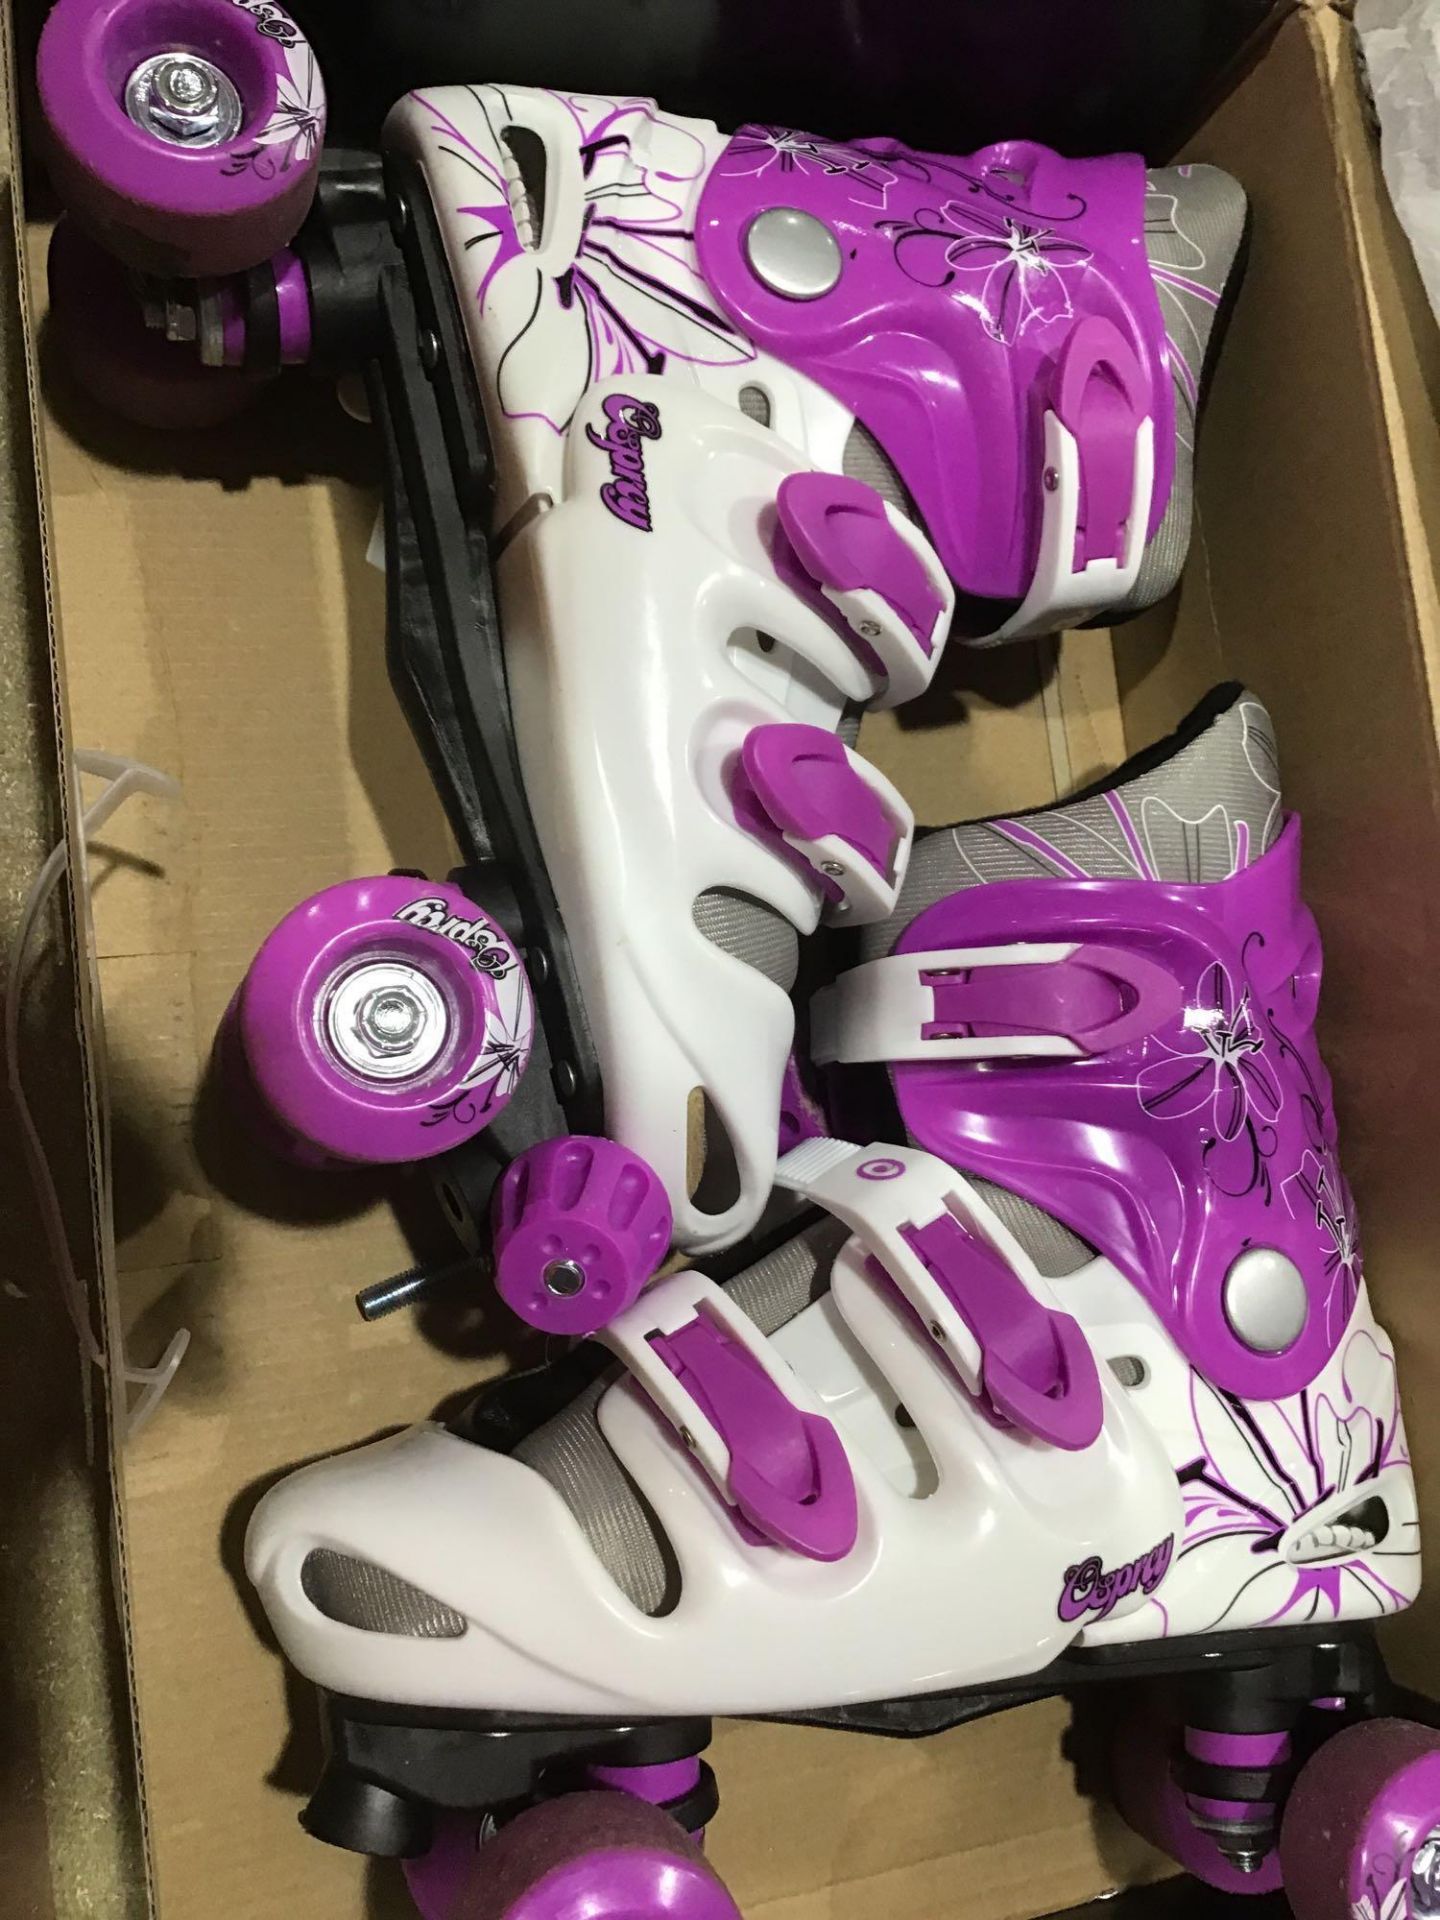 Osprey Kids Roller Skates - Adjustable Roller Skates for Girls (Purple) - Image 2 of 4